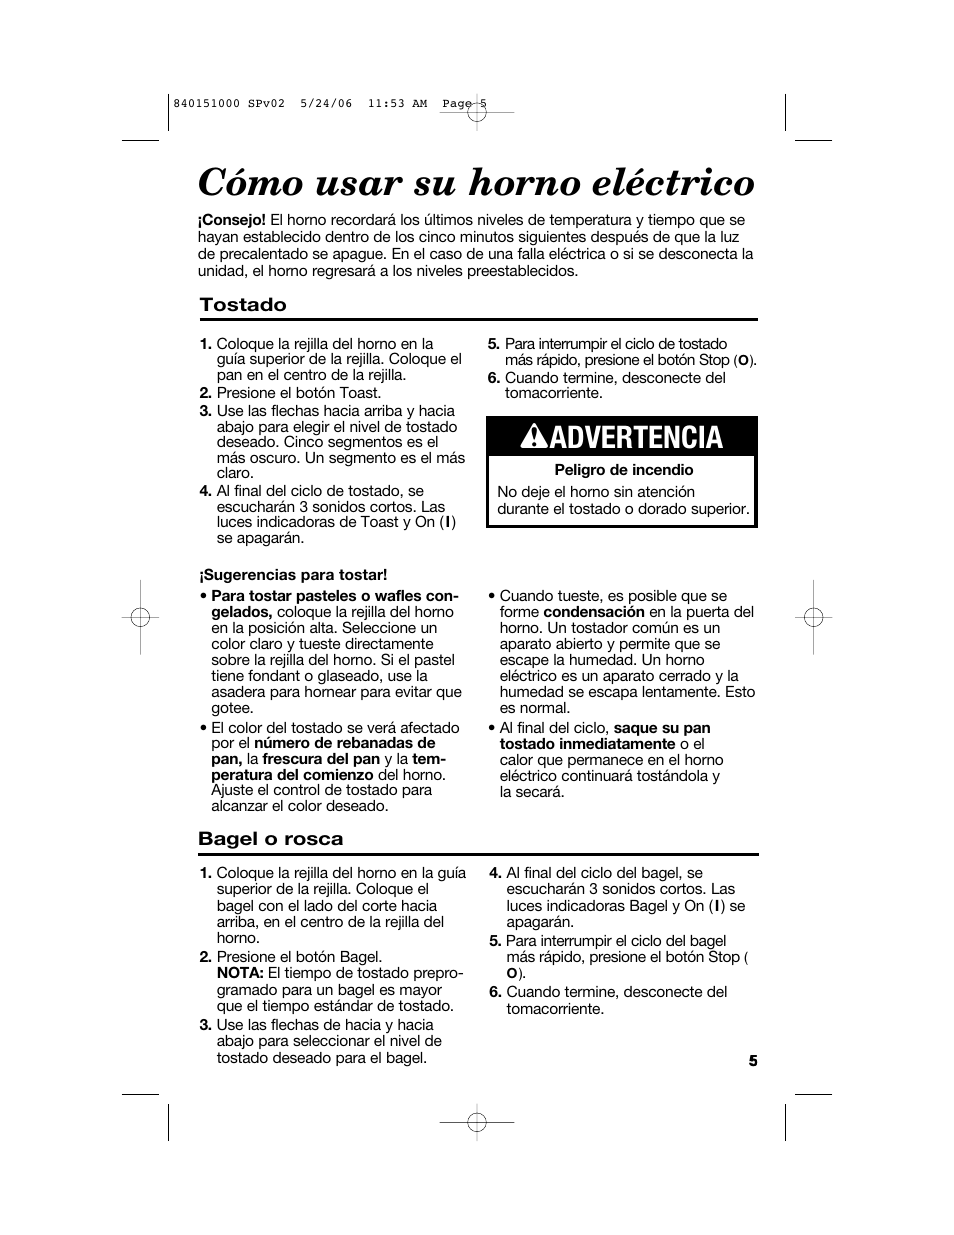 Cómo usar su horno eléctrico, W advertencia | Hamilton Beach 840151000 User  Manual | Page 21 / 36